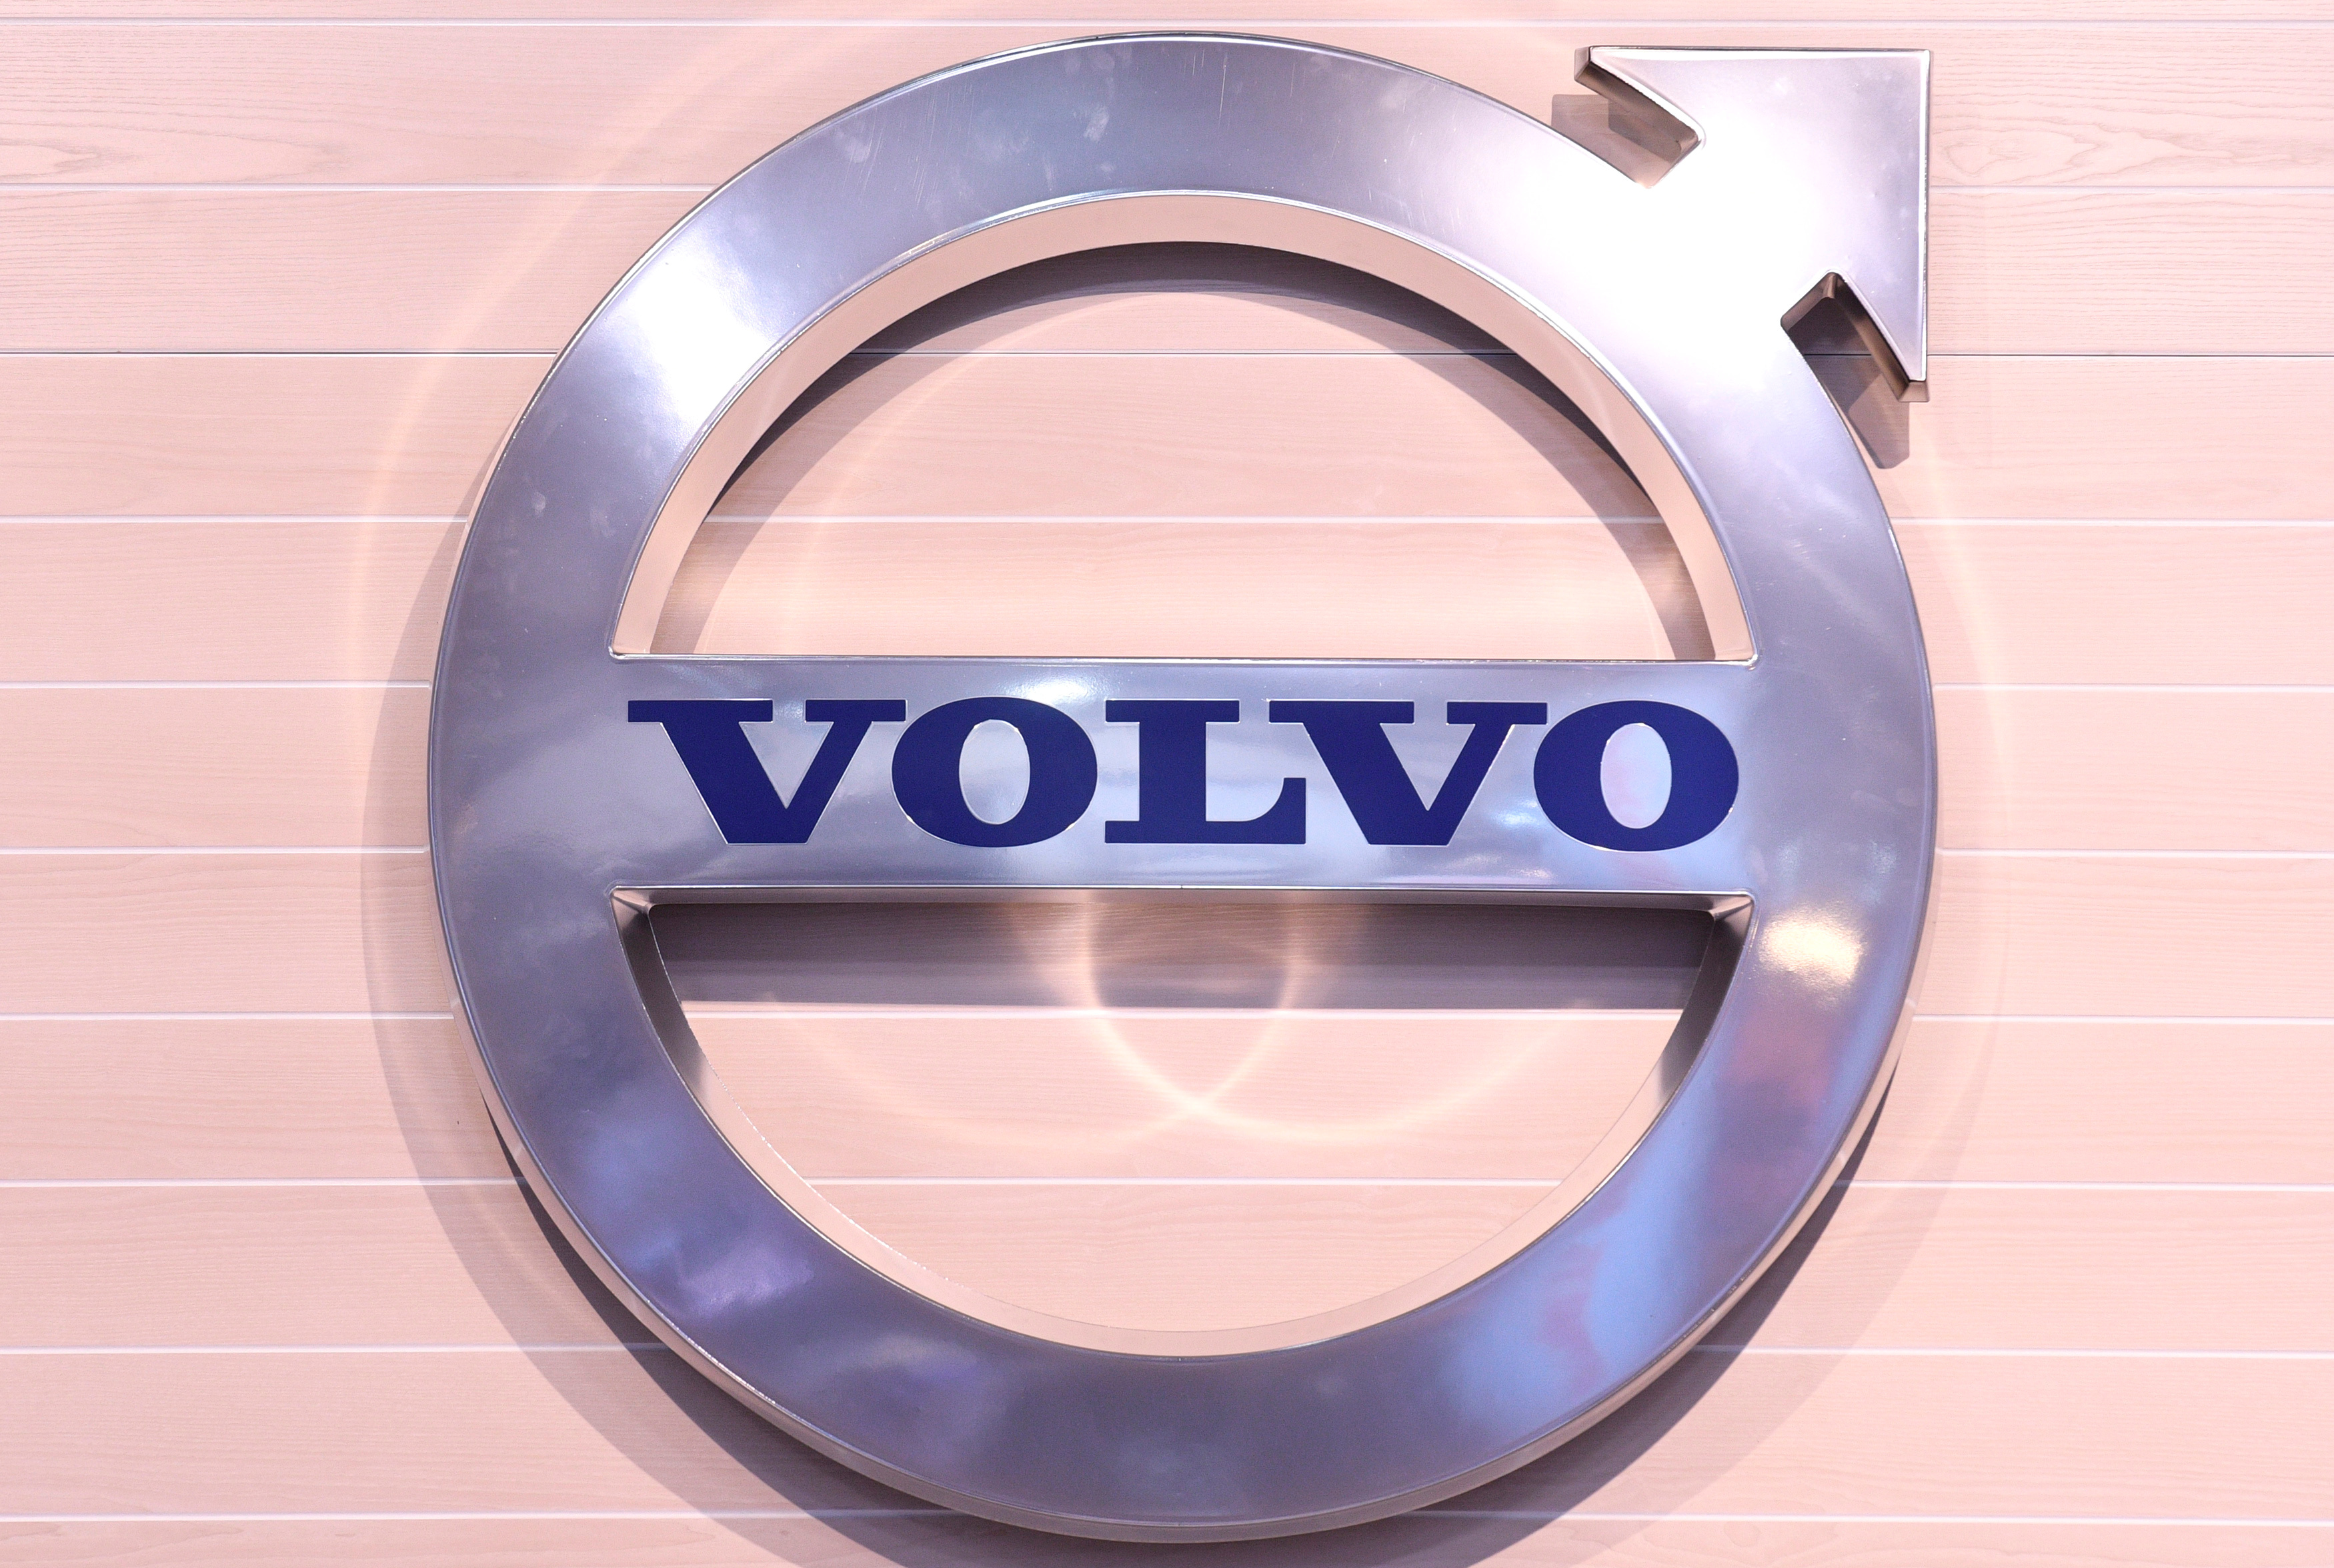 Véhicules électriques : Volvo accélère avec l'ouverture d'une troisième usine en Europe